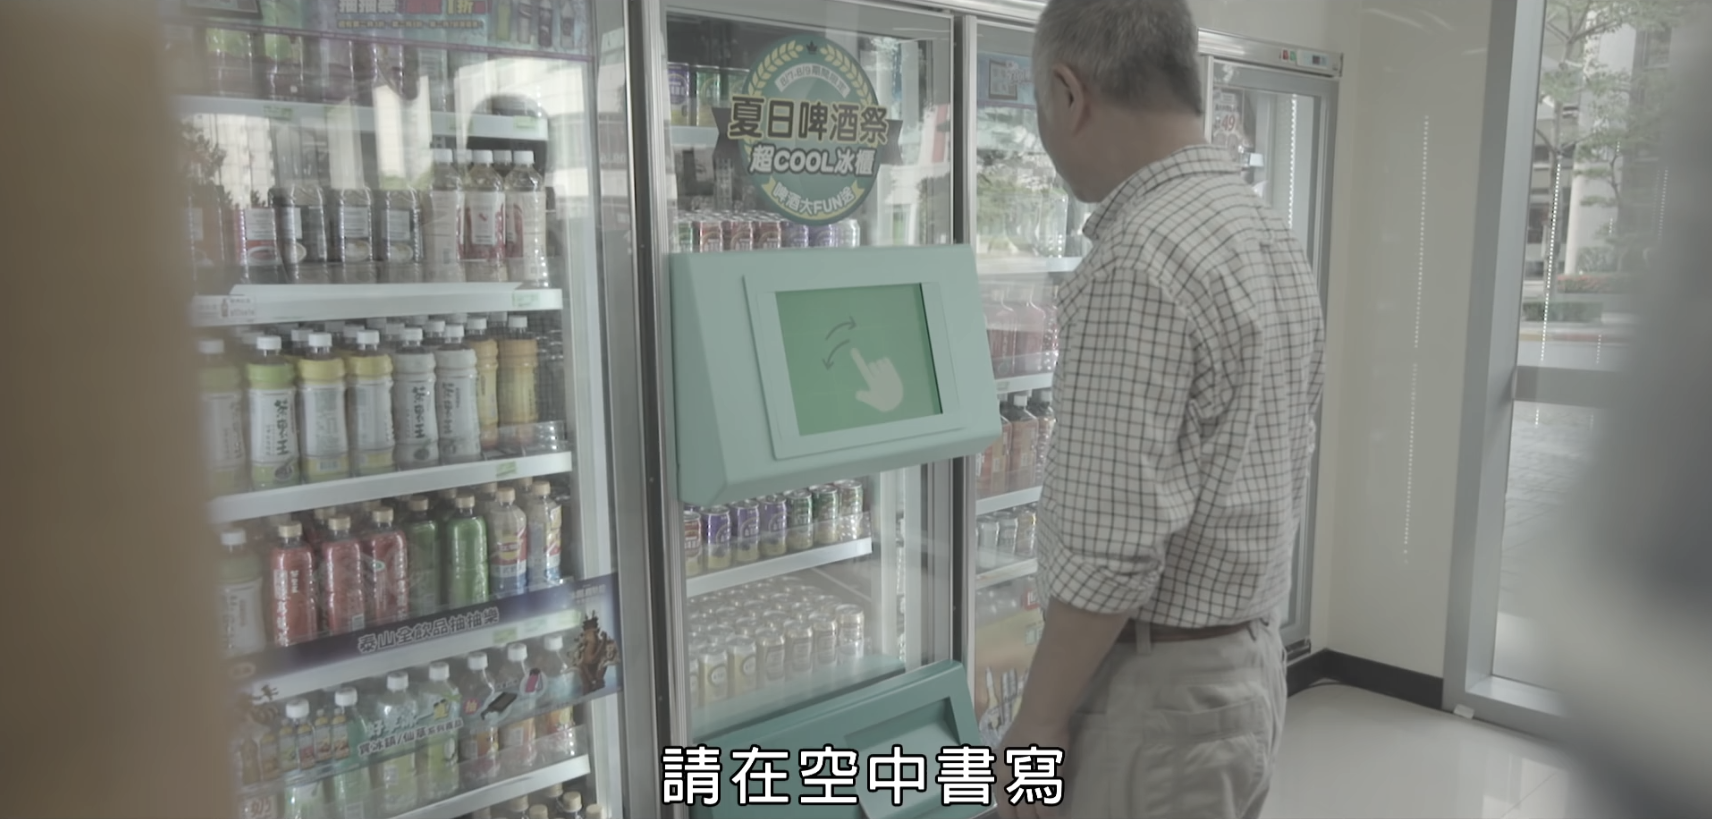 台湾高科技水果啤酒宣传广告